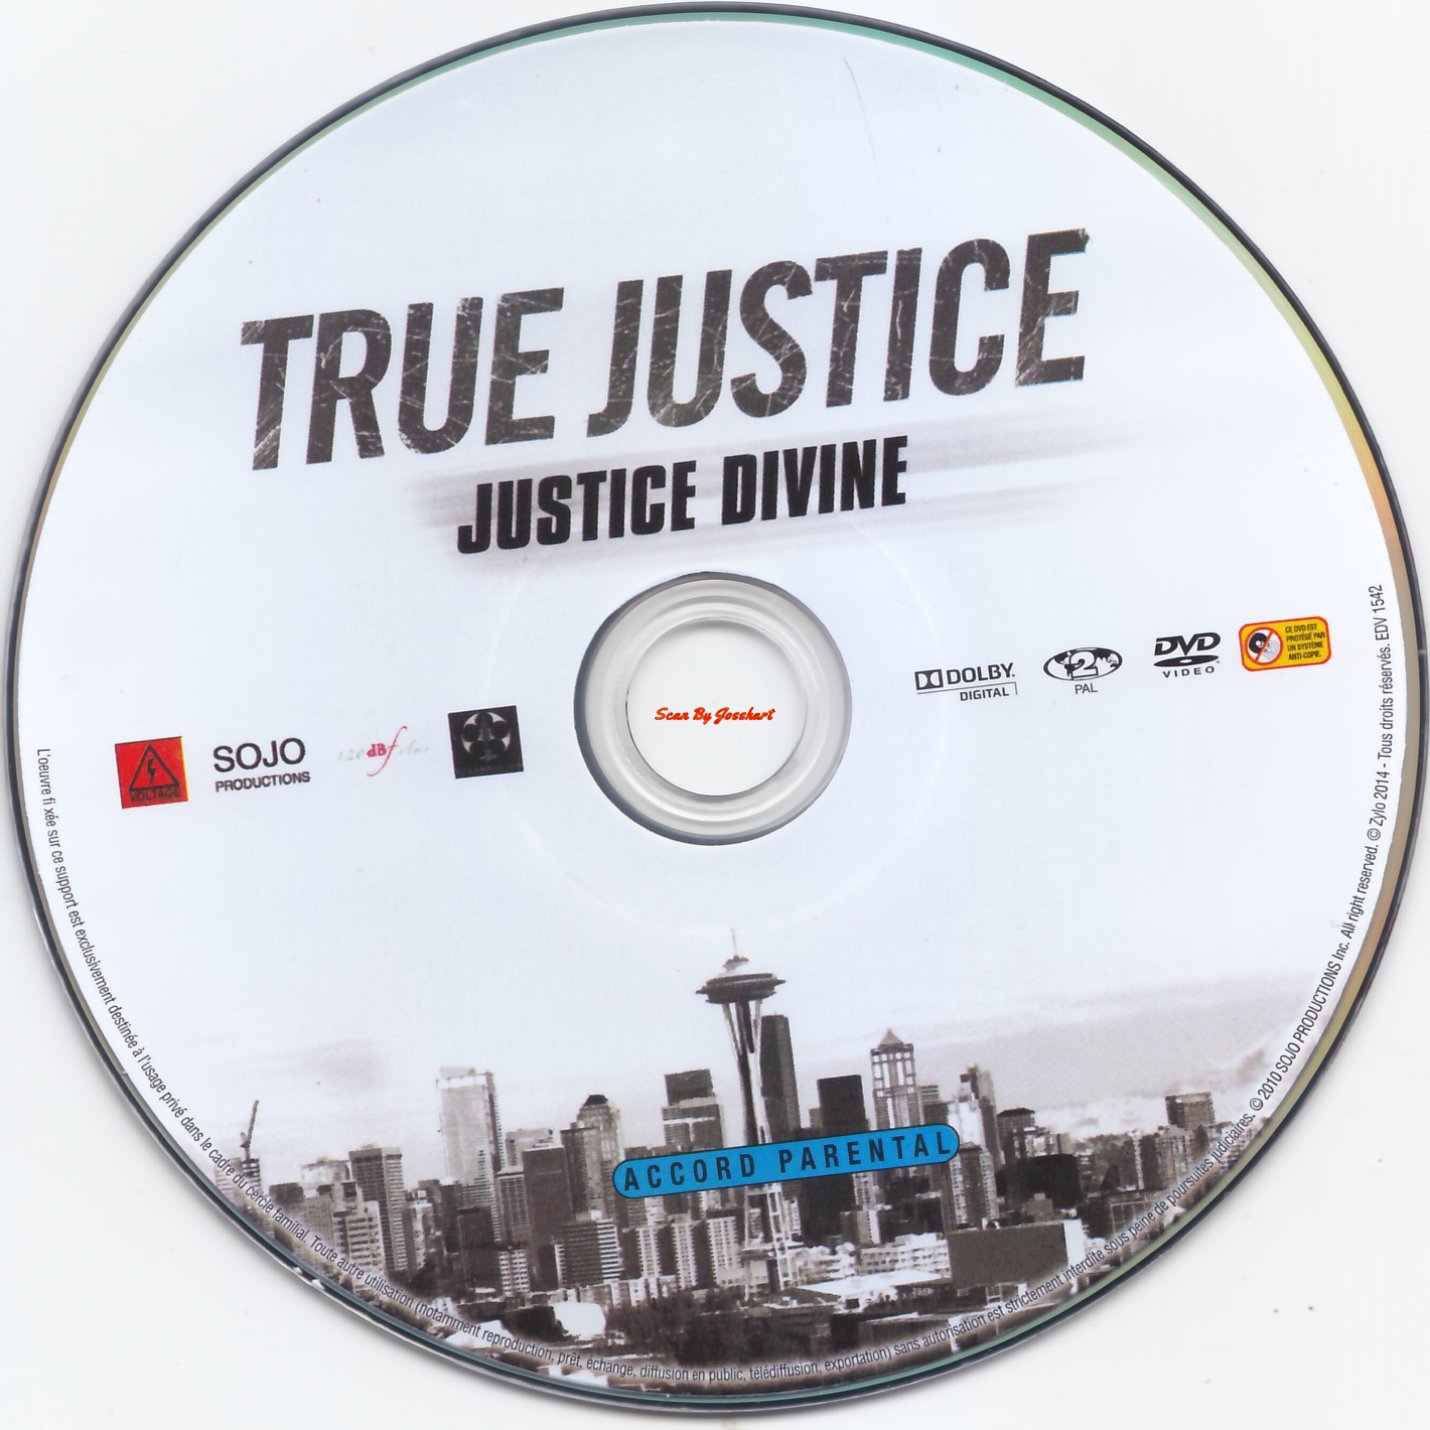 True Justice 4 Justice Divine v2